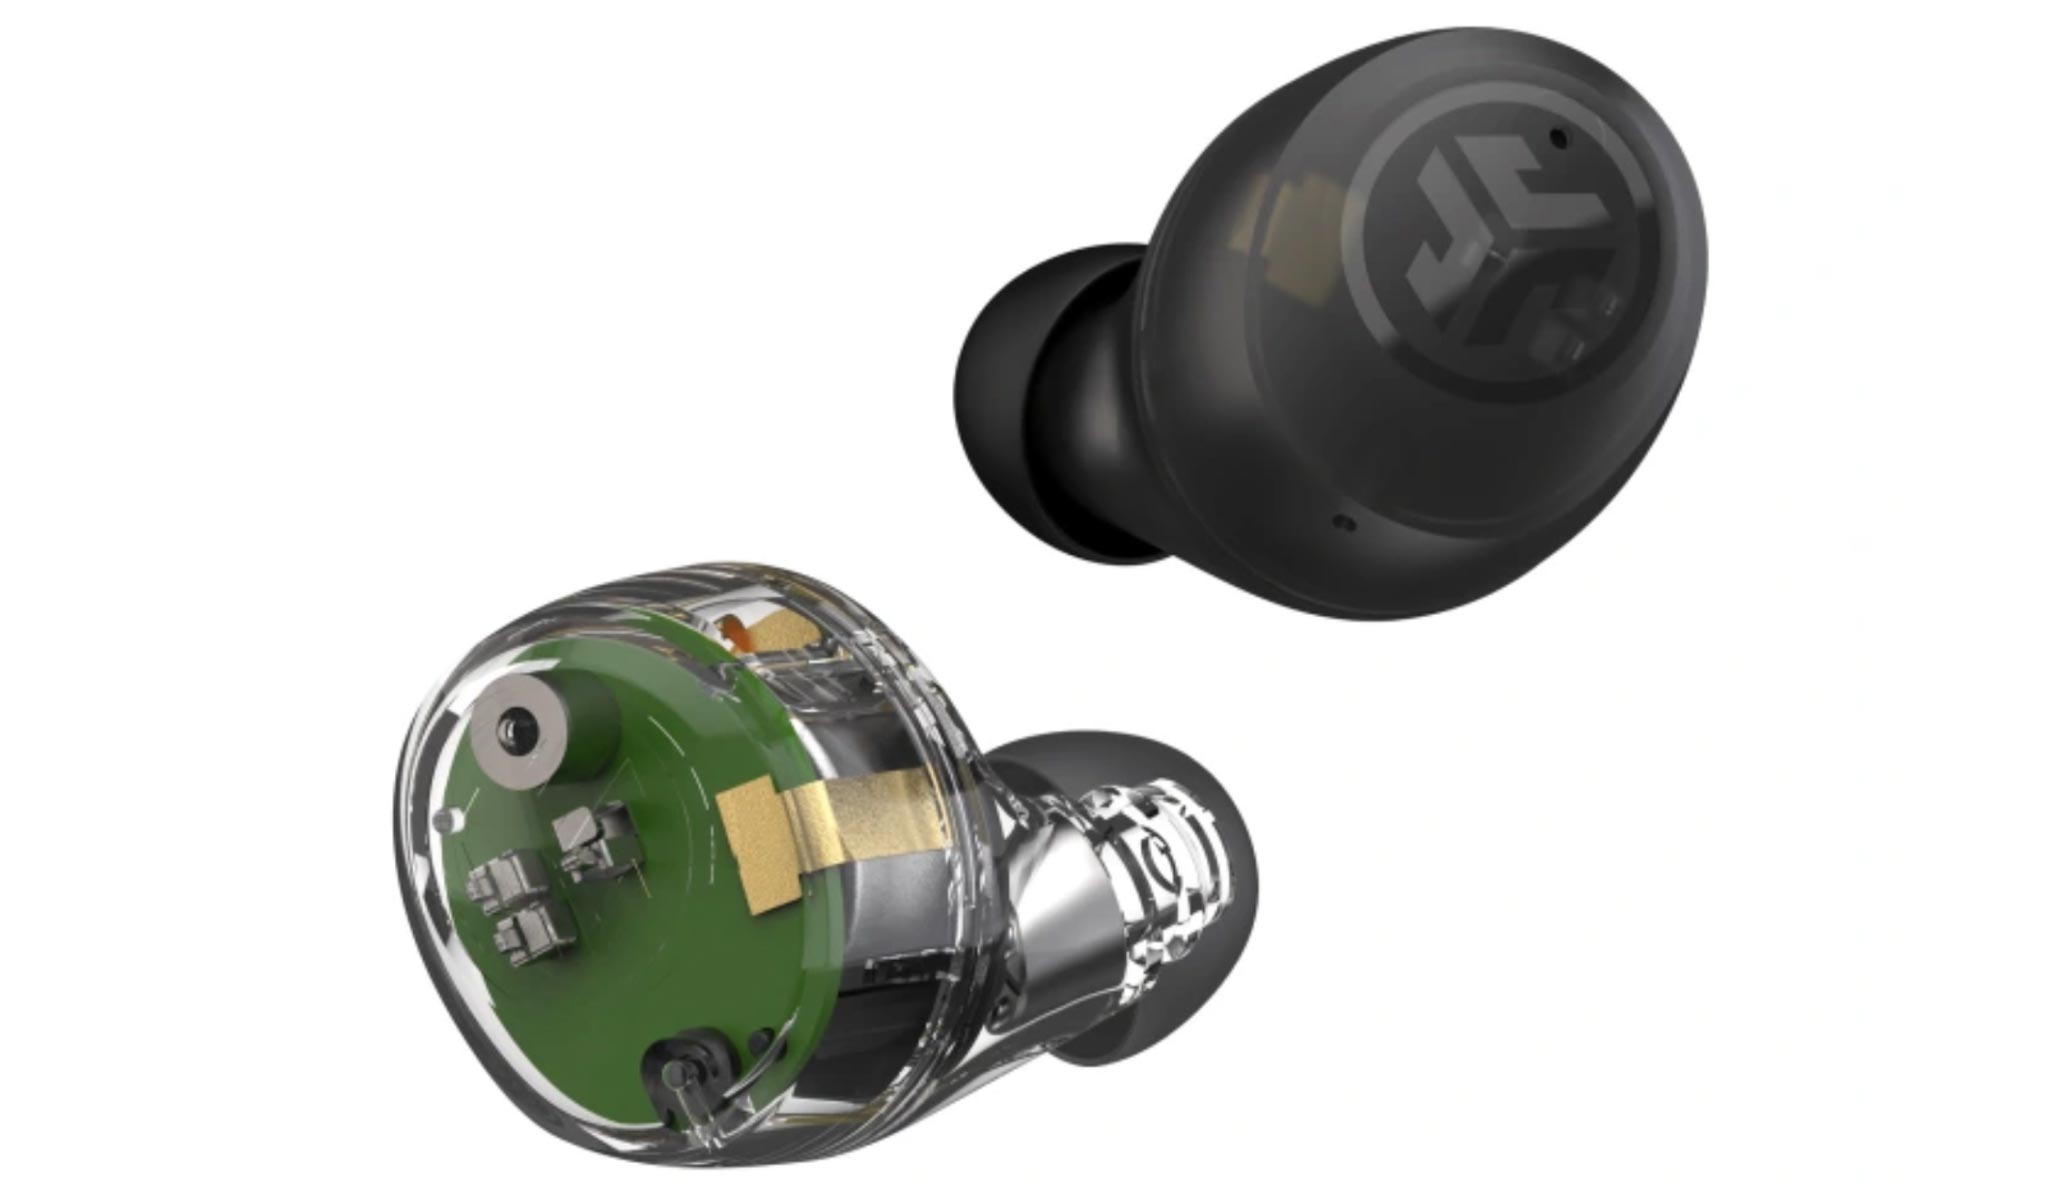 JLab ra mắt Tai Nghe Earbuds siêu nhỏ và Bàn Phím Cơ Đầu Tiên của hãng tại CES 2023